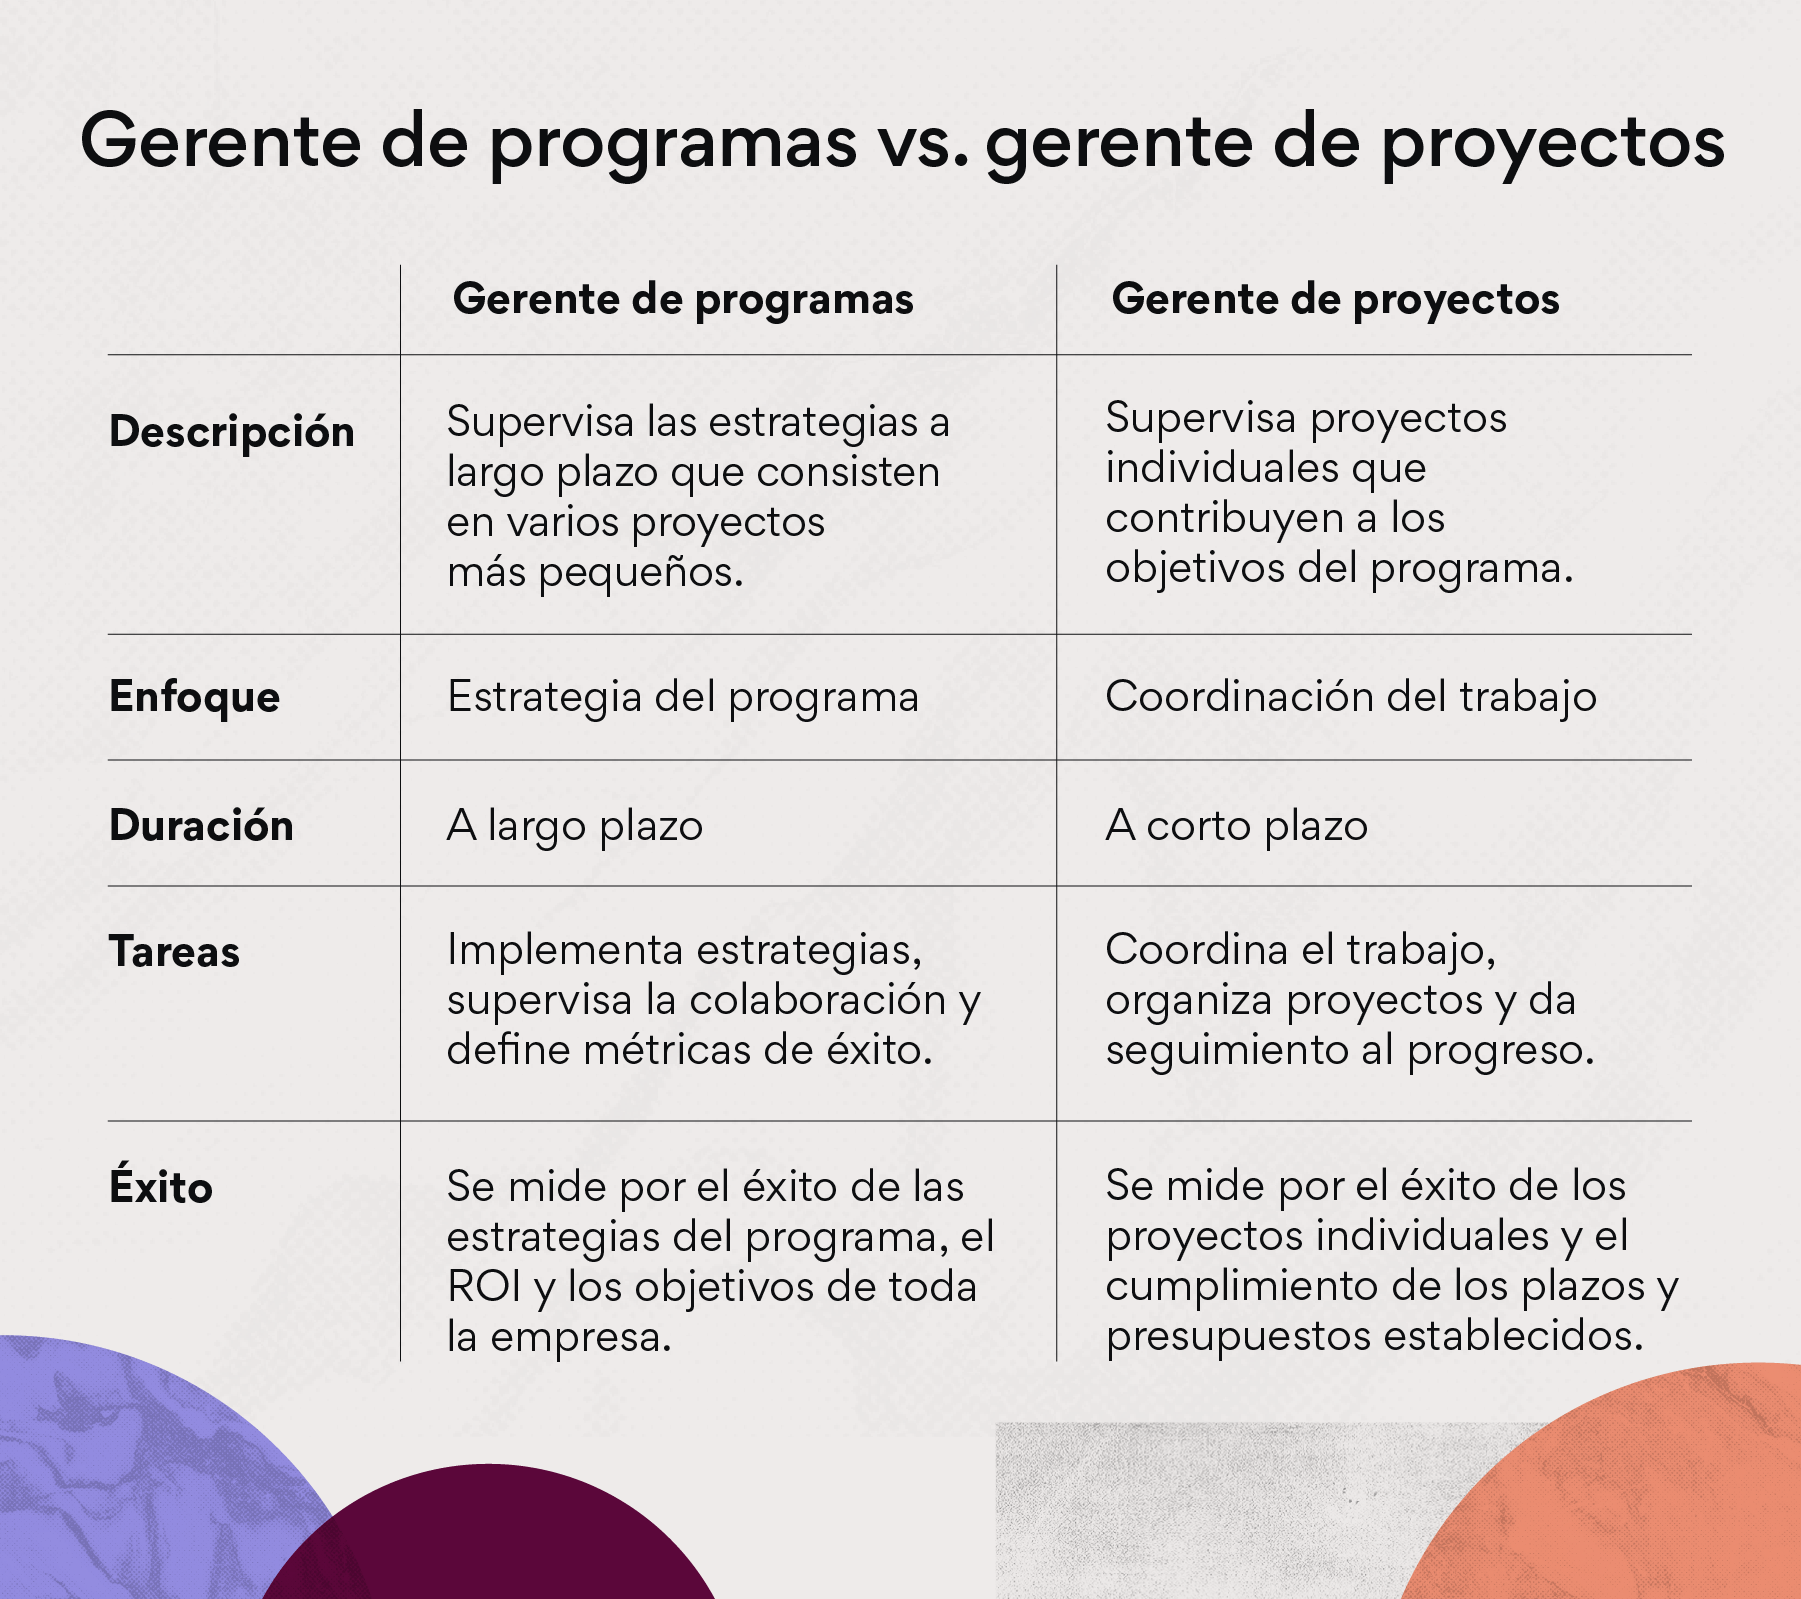 Gerente de programas vs. gerente de proyectos